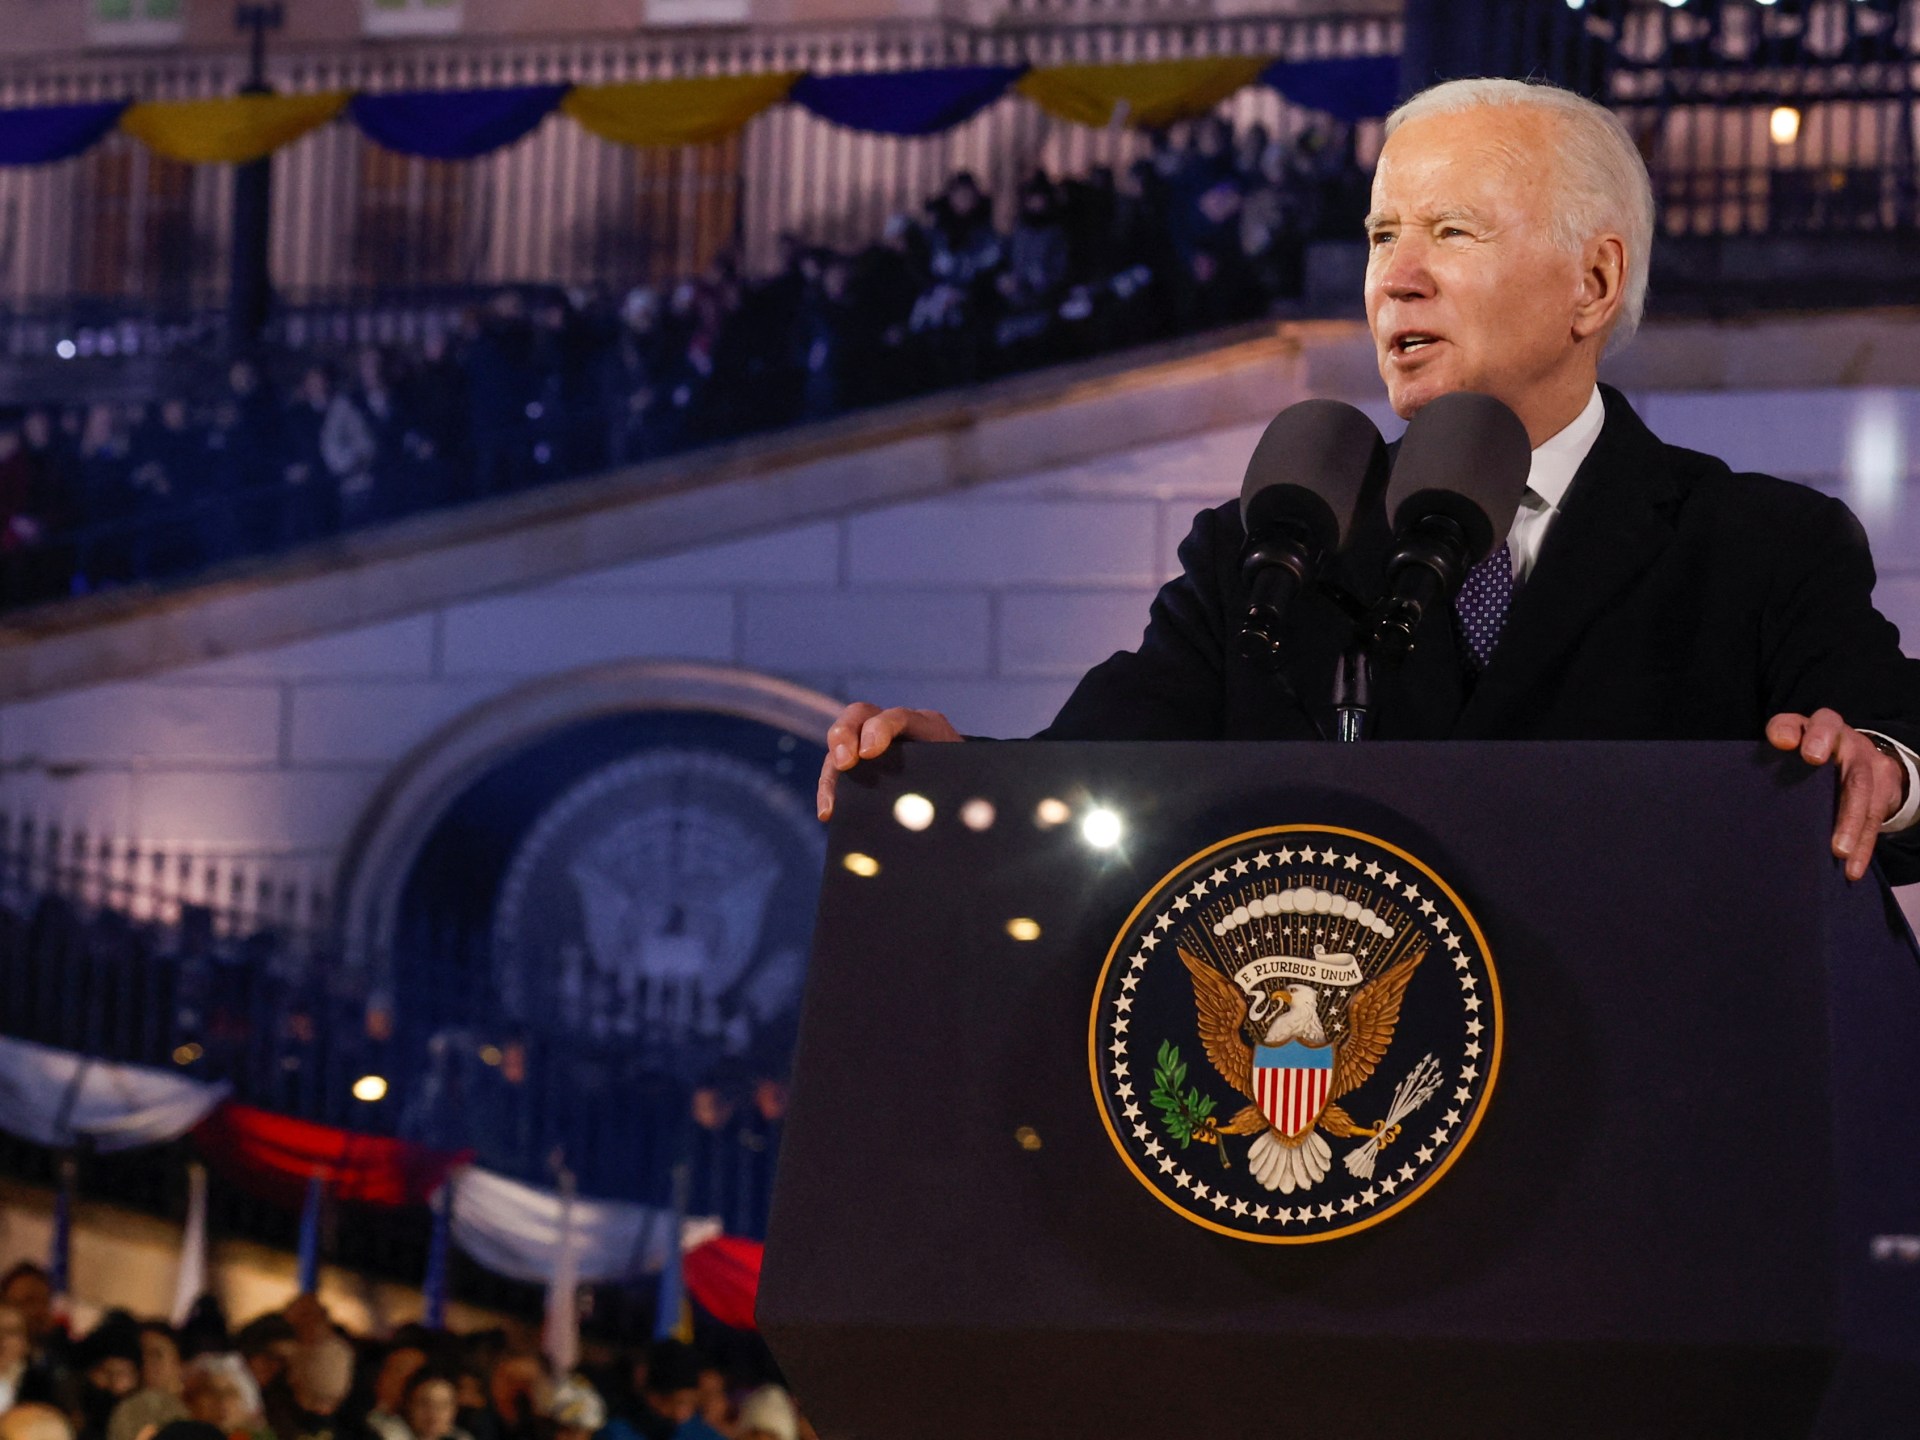 Biden mendukung Kiev saat Putin membekukan kesepakatan nuklir dengan AS |  Berita